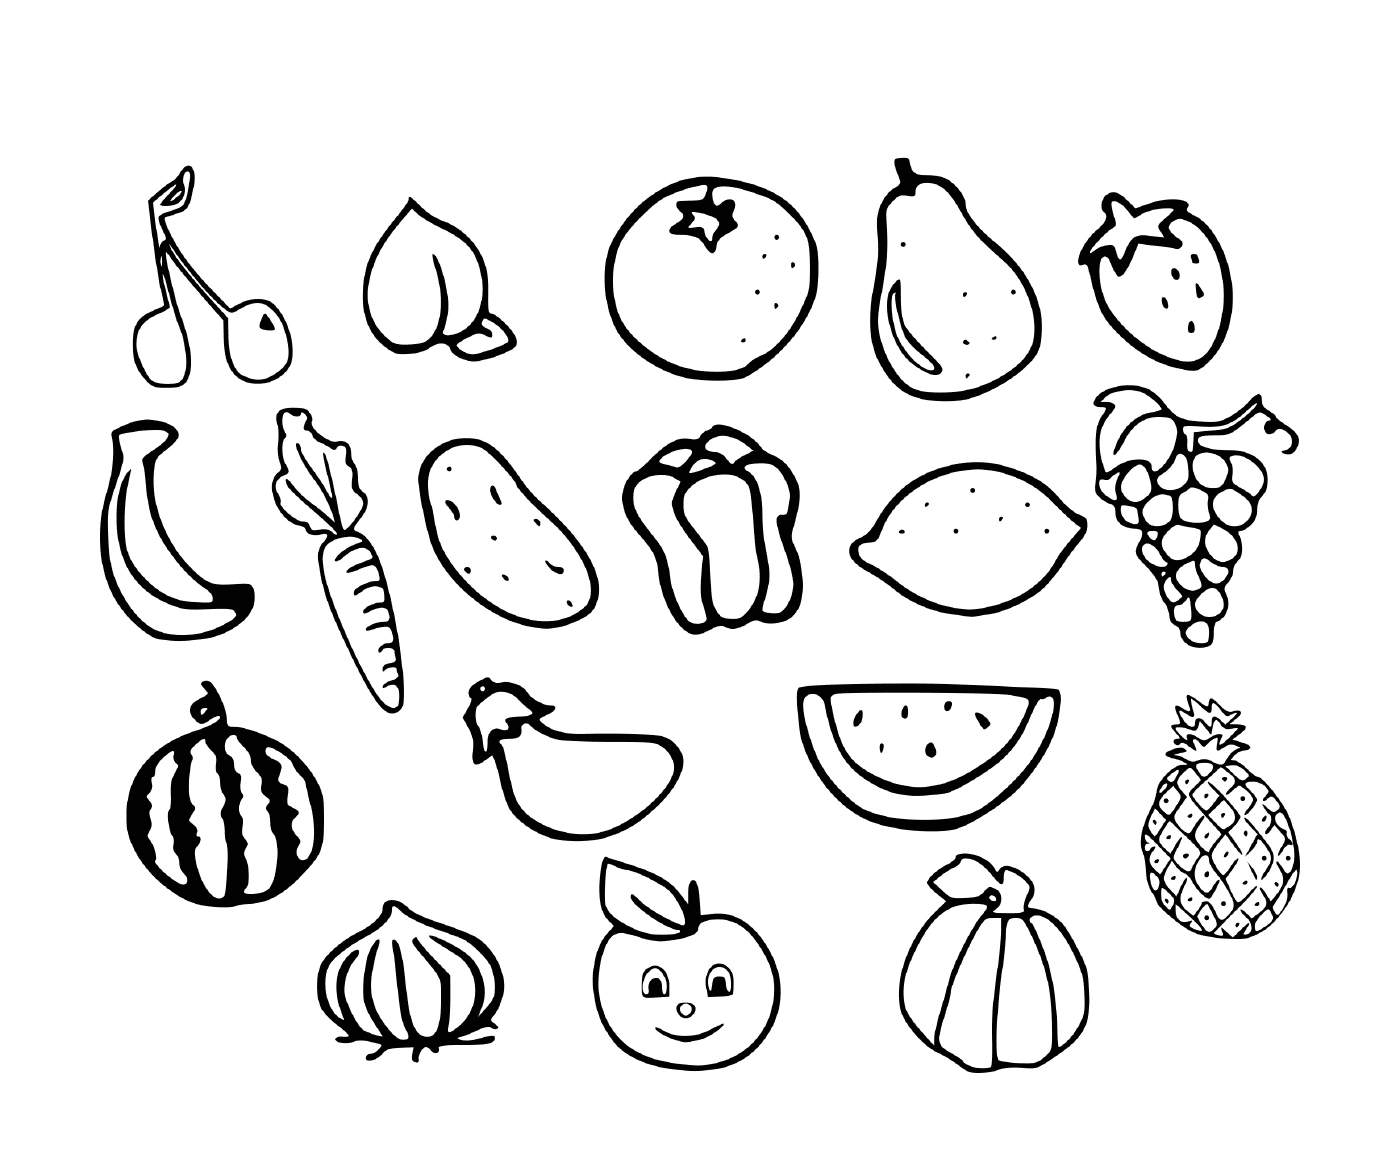  Frutas e legumes extraídos 